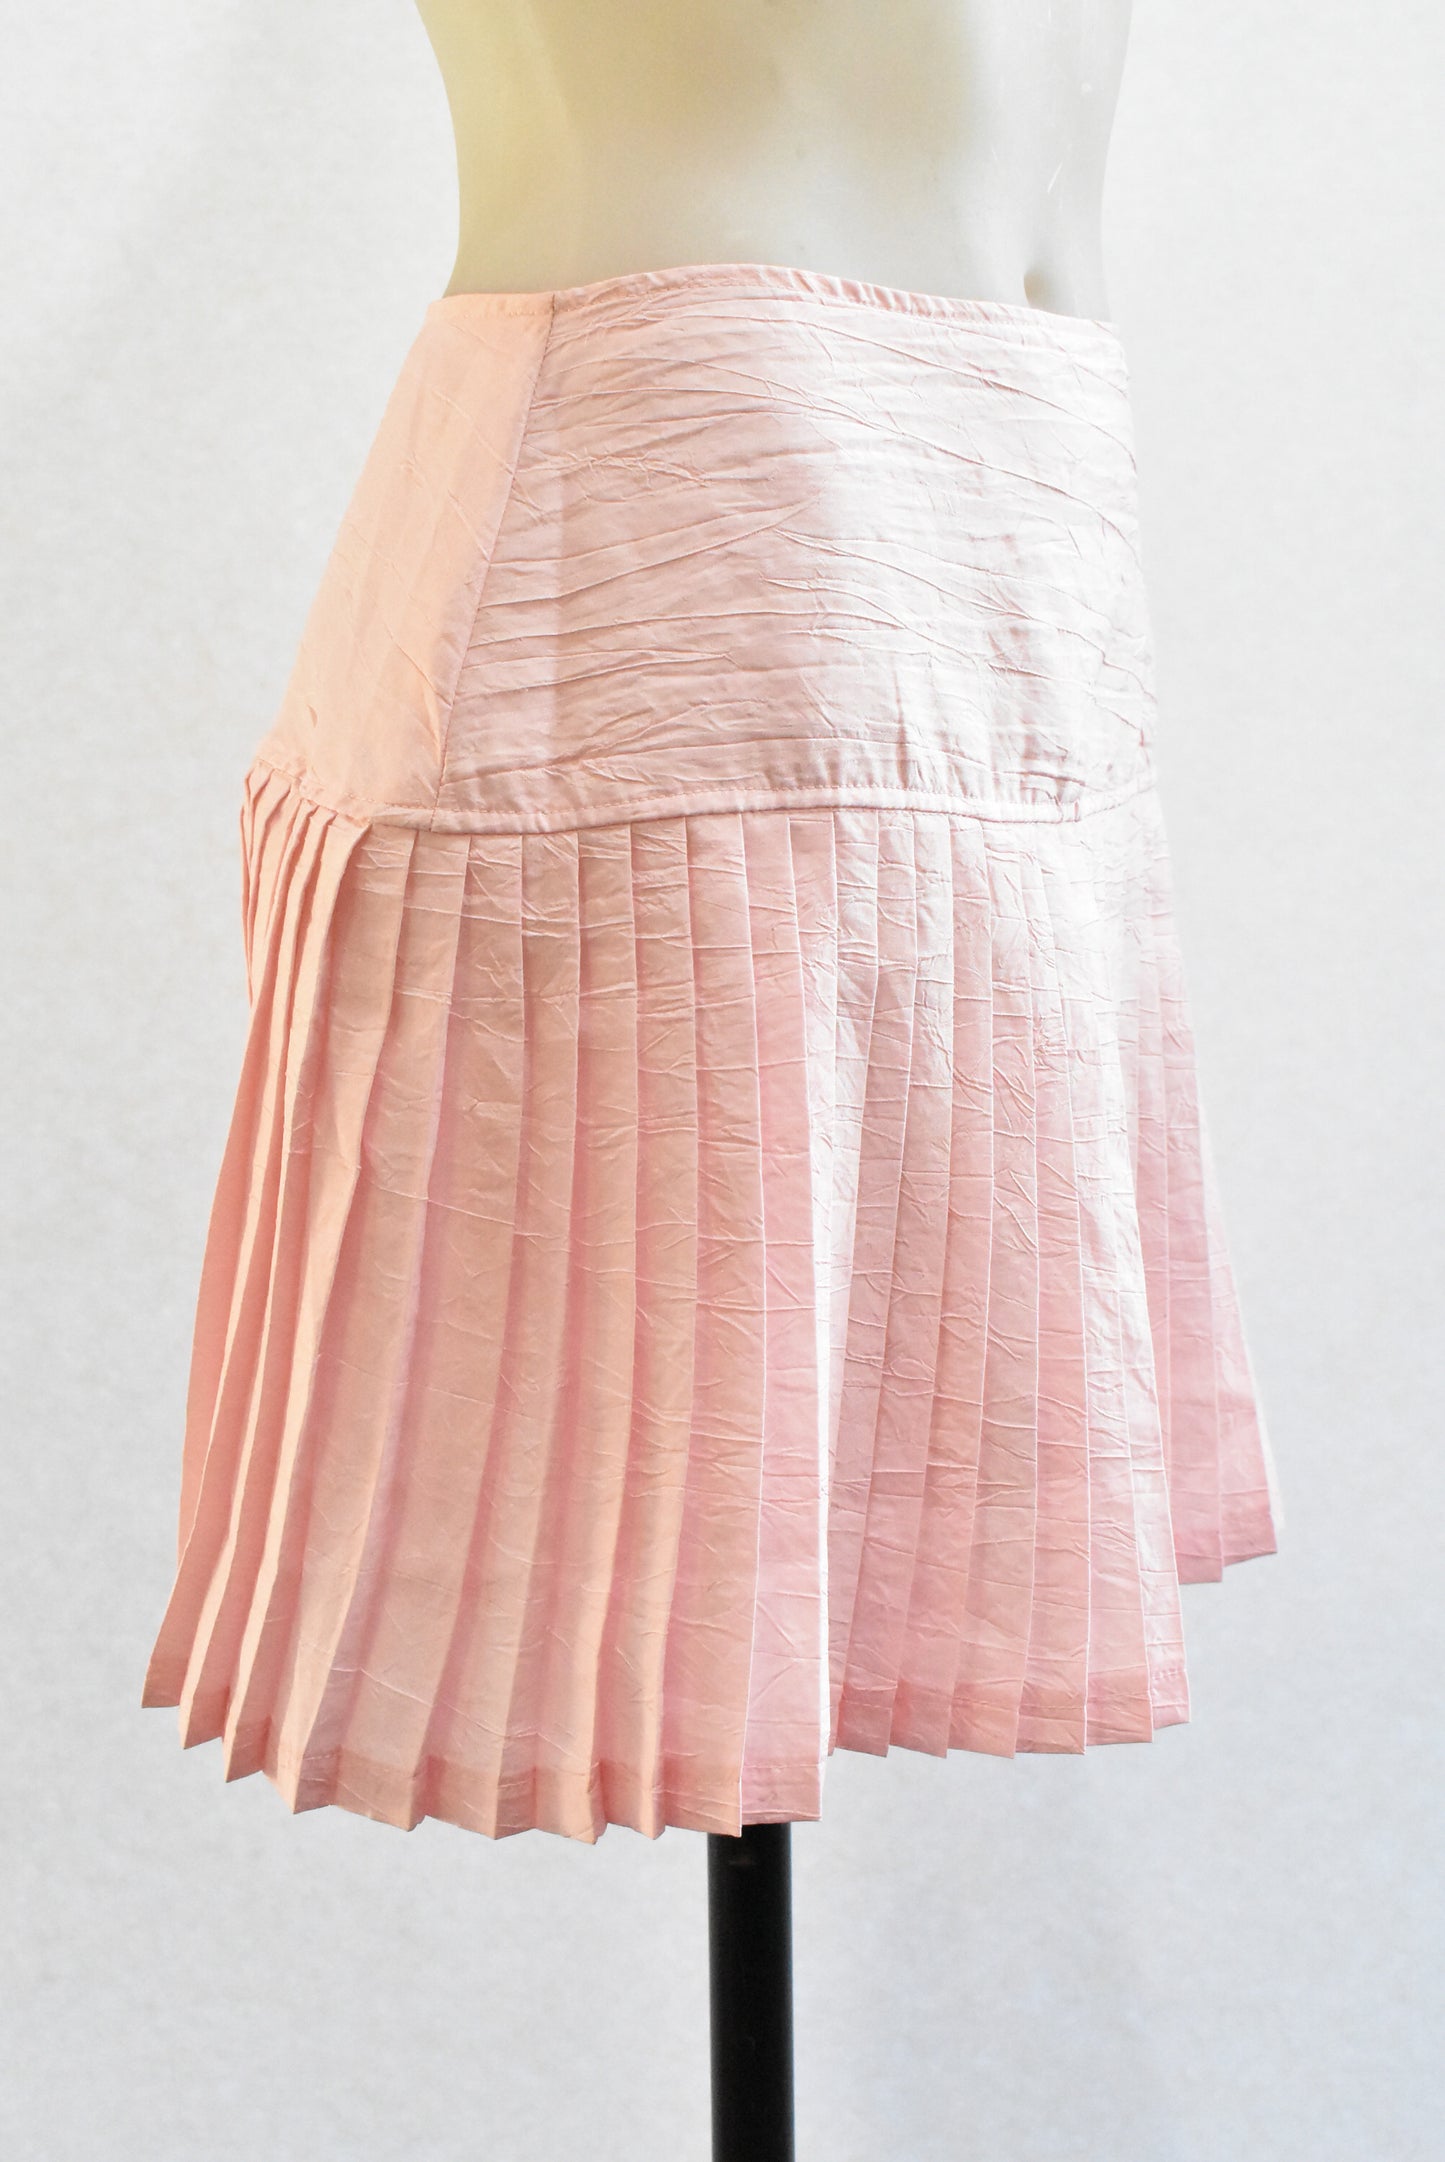 Cherade retro pink pleat mini, size 12